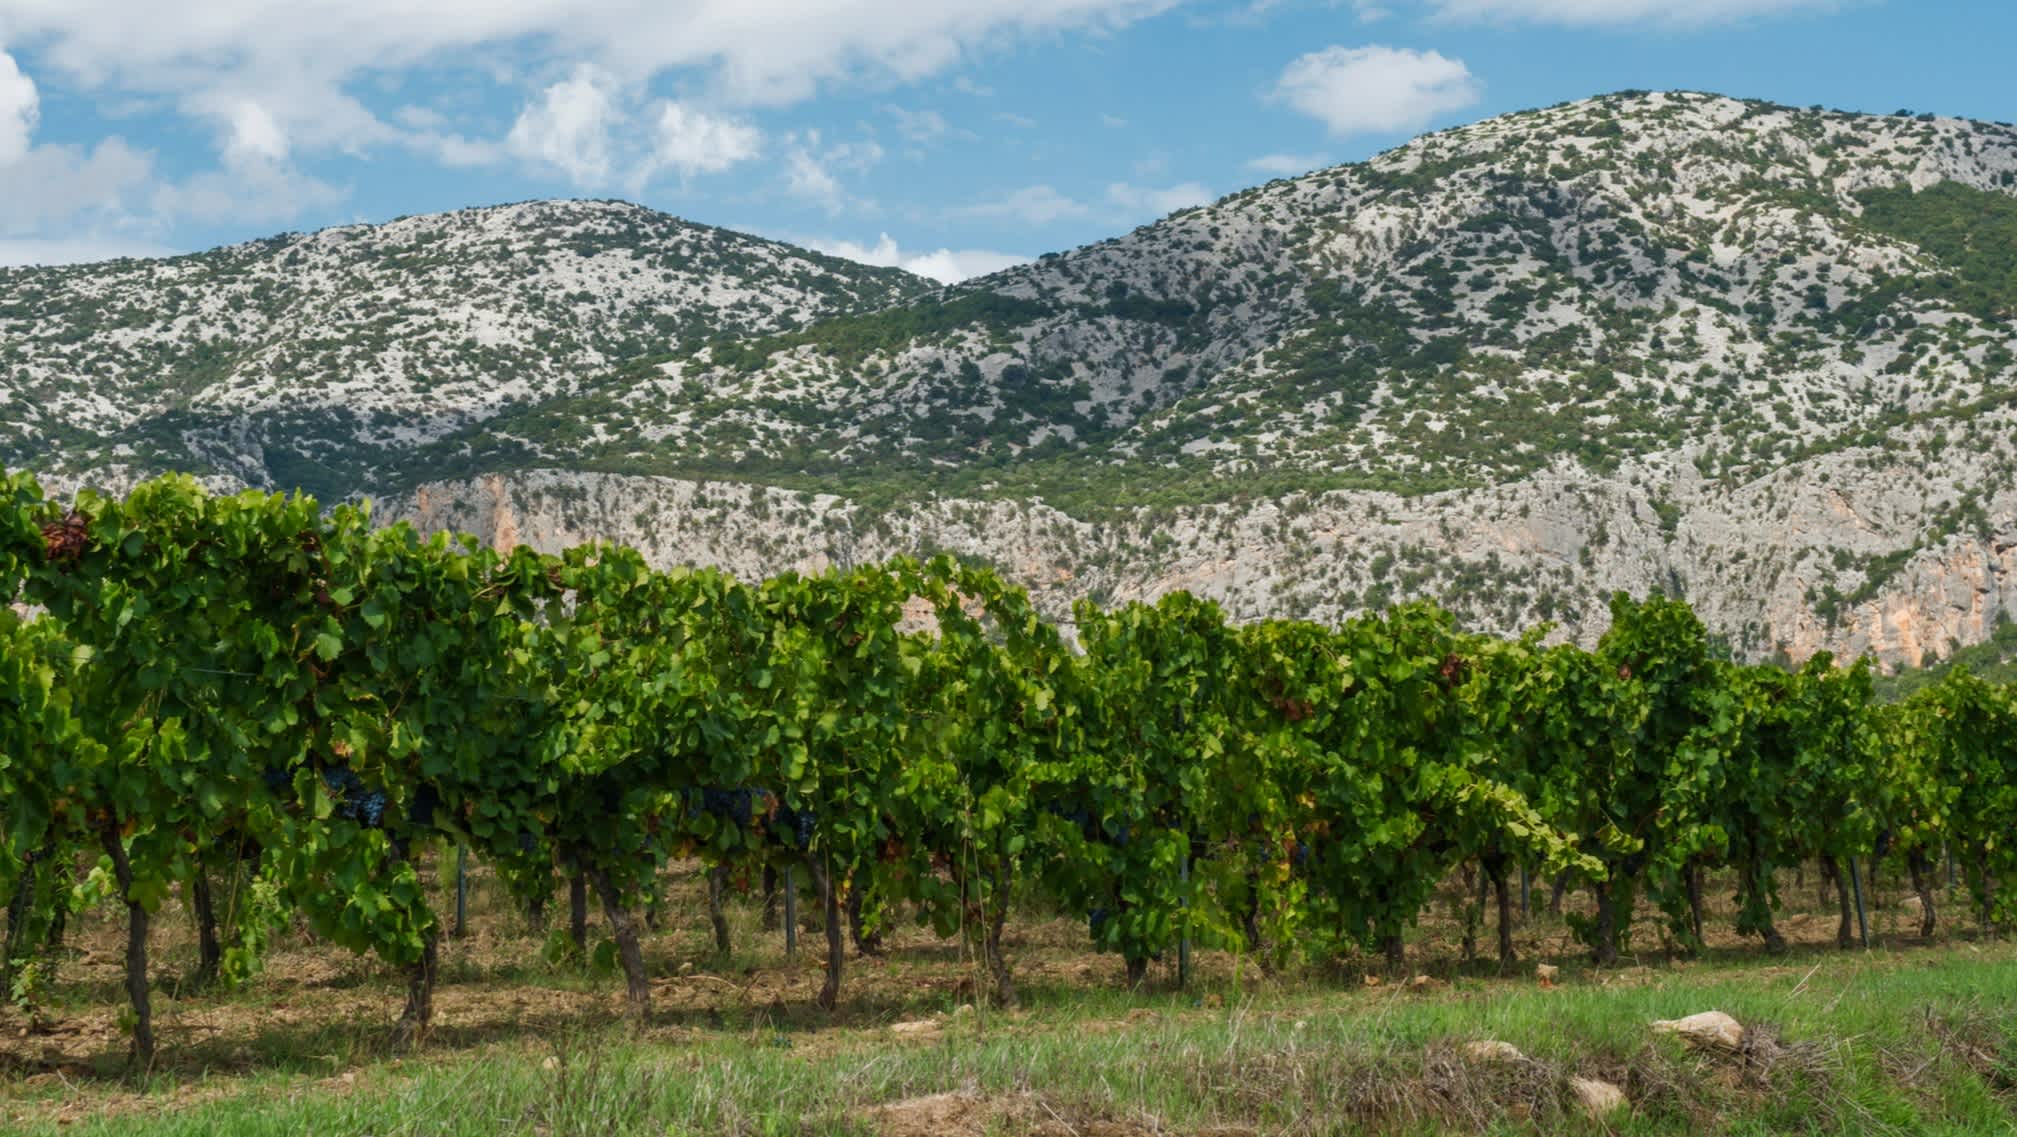 Weinberge mit Supramonte-Kalksteinbergen, Sardinien, Italien.